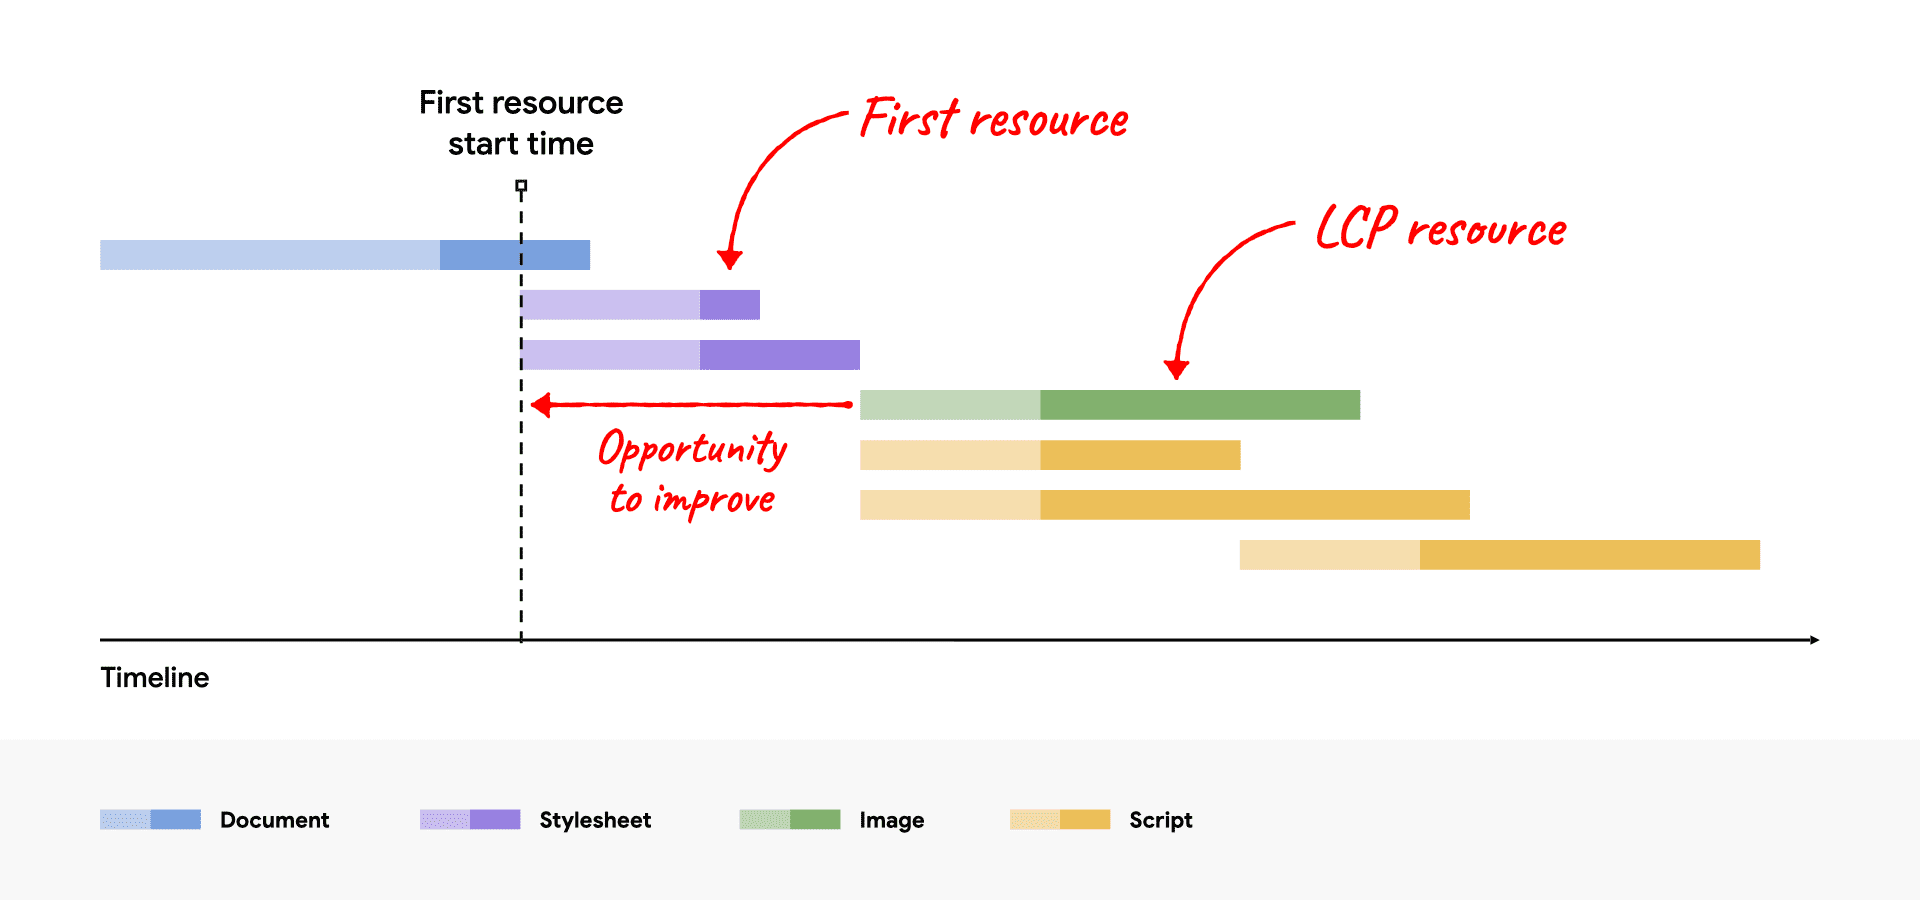 显示 LCP 资源在第一个资源之后启动的网络瀑布图，其中显示了改进机会